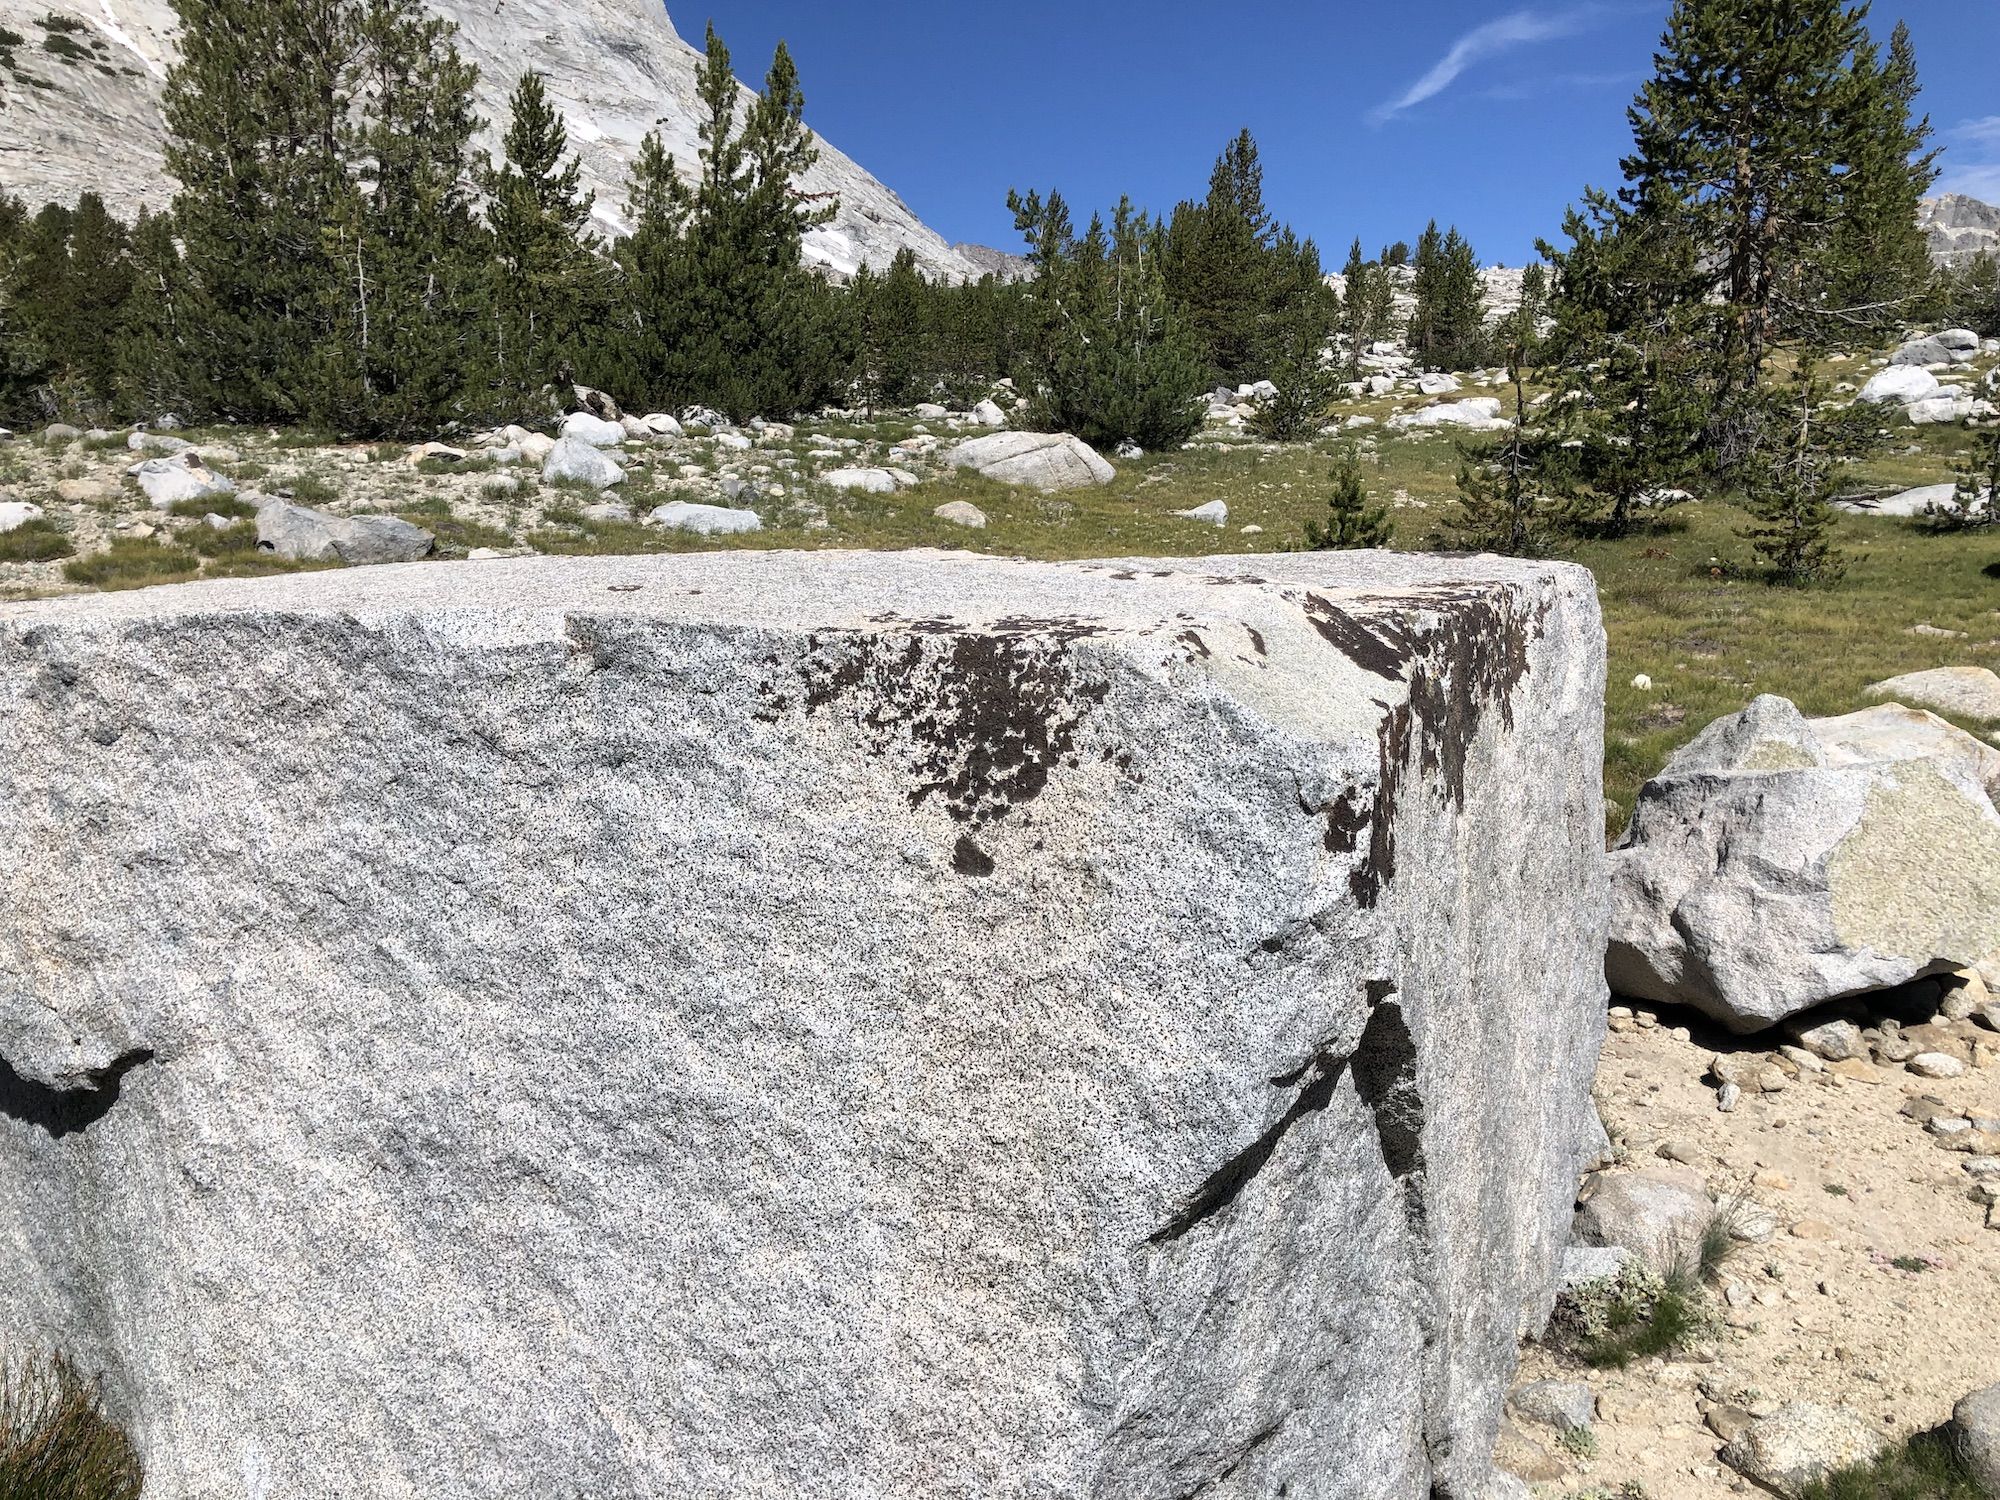 A square granite boulder.